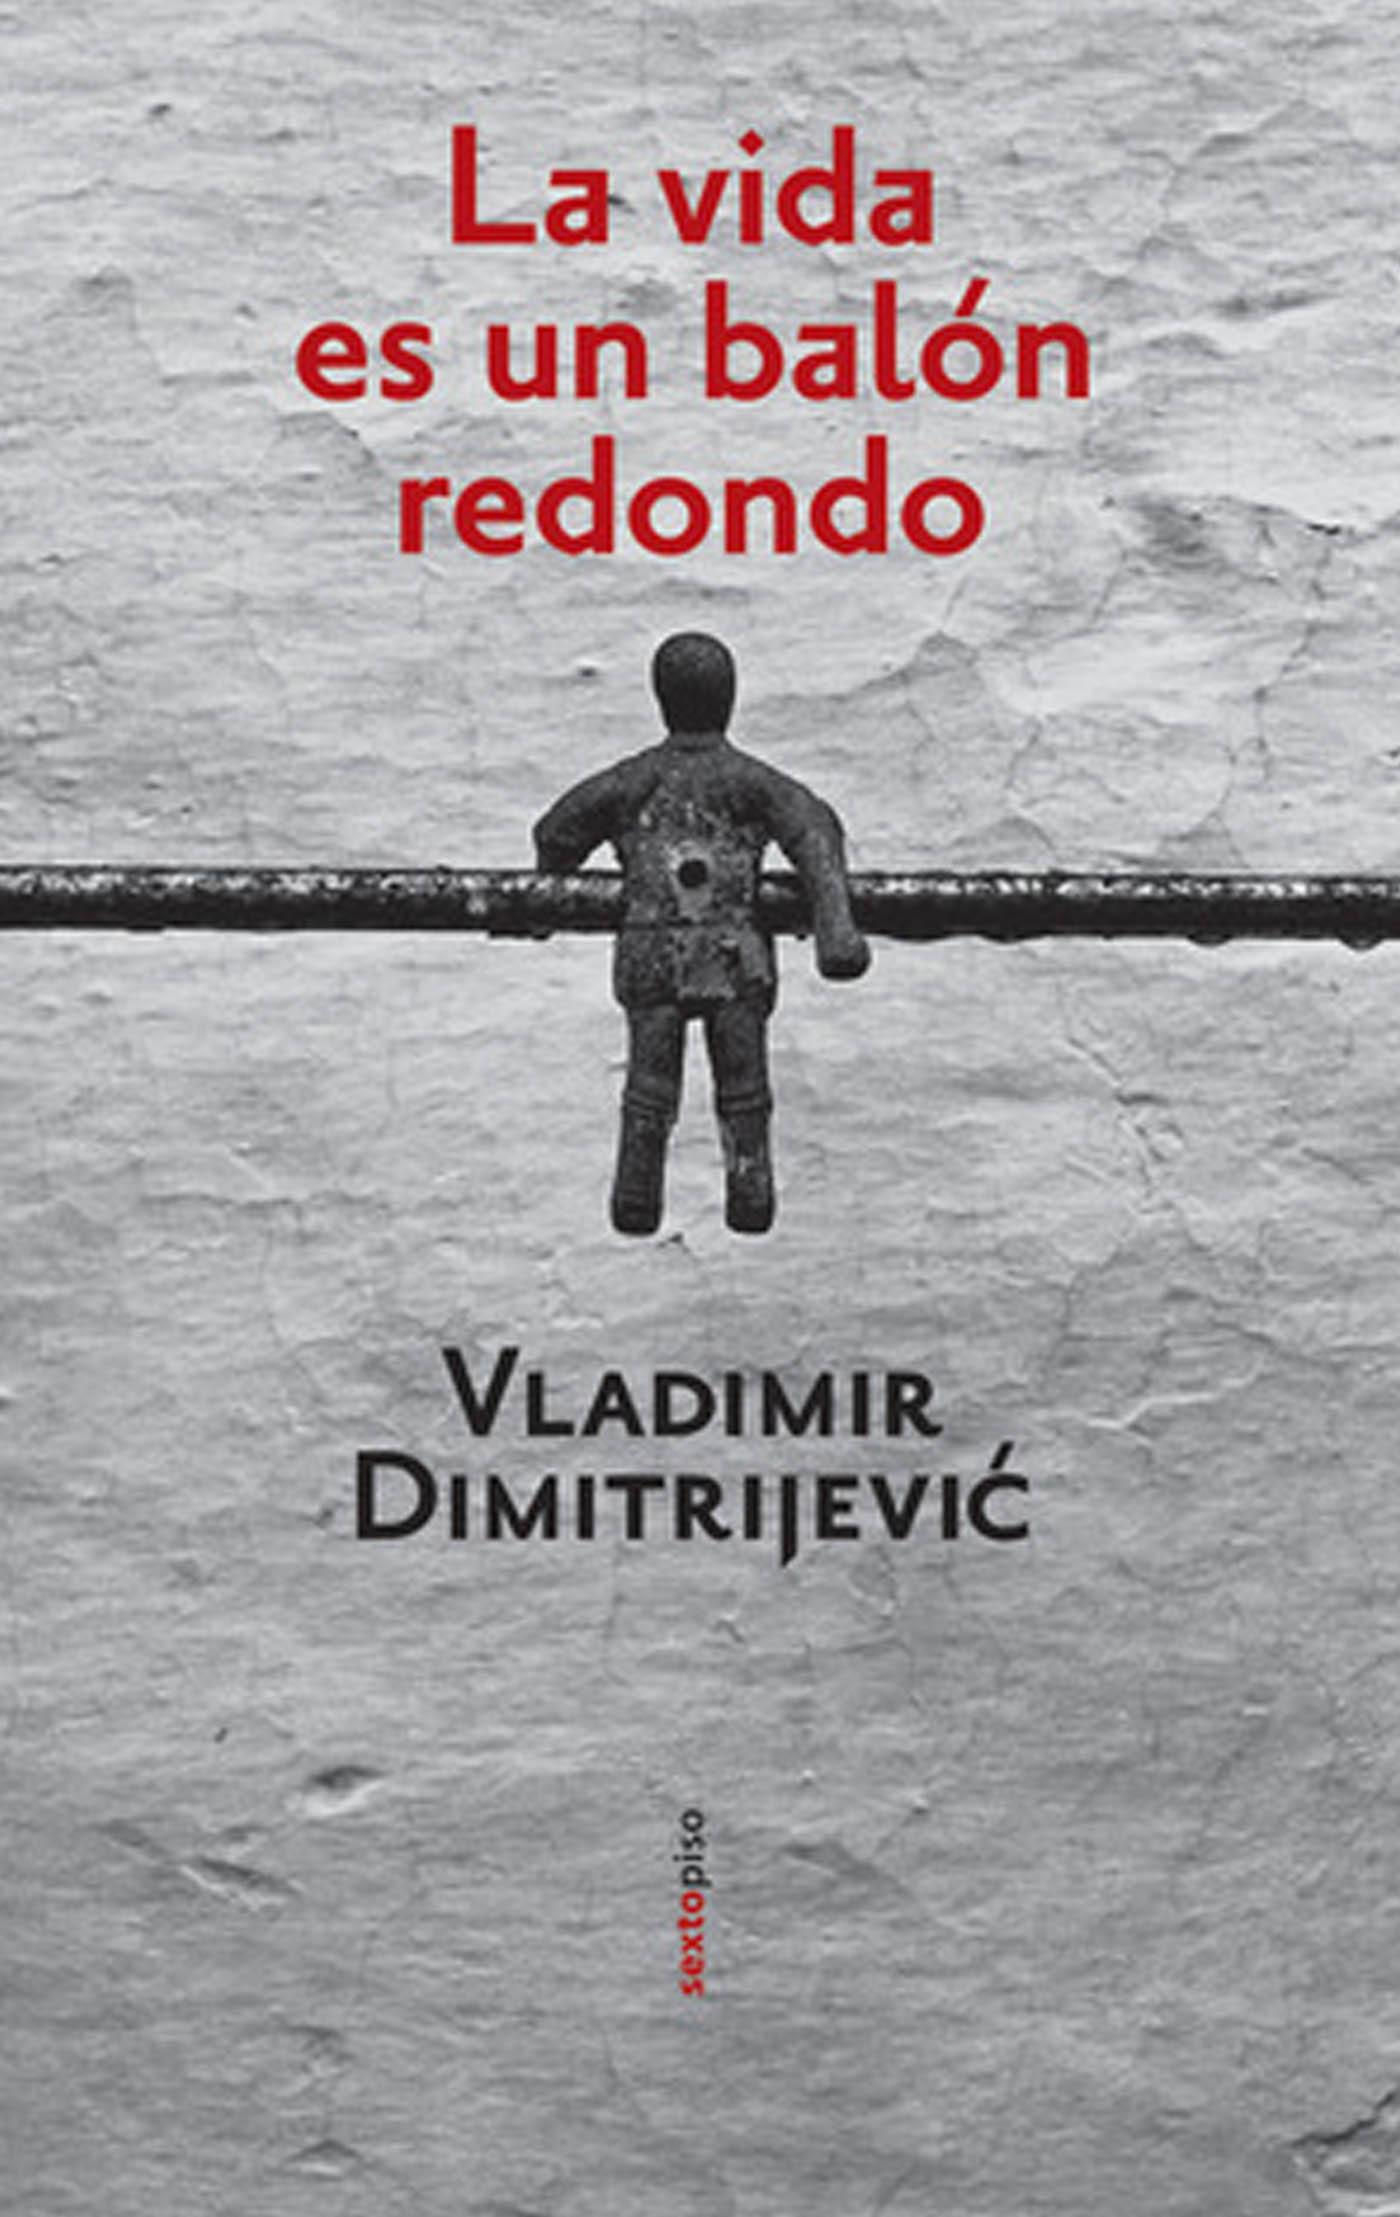 La vida es un balón redondo Vladimir Dimitrijevic